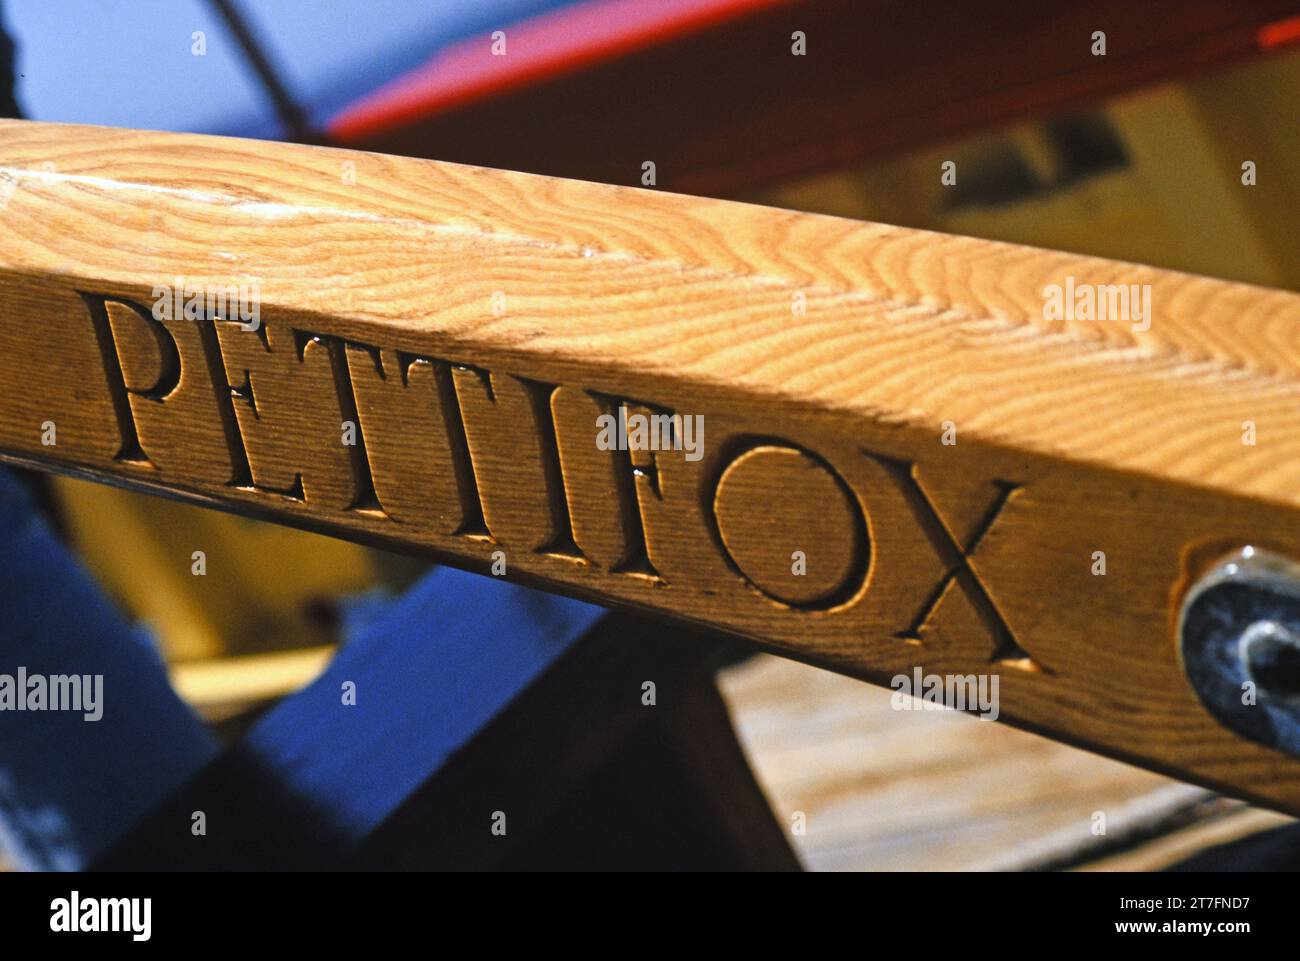 Il nome Pettifox inciso sul timone della replica del granchio francese, l'ultima barca a vela costruita a St Marys, isole Scilly. Questa immagine è stata copiata da una Foto Stock